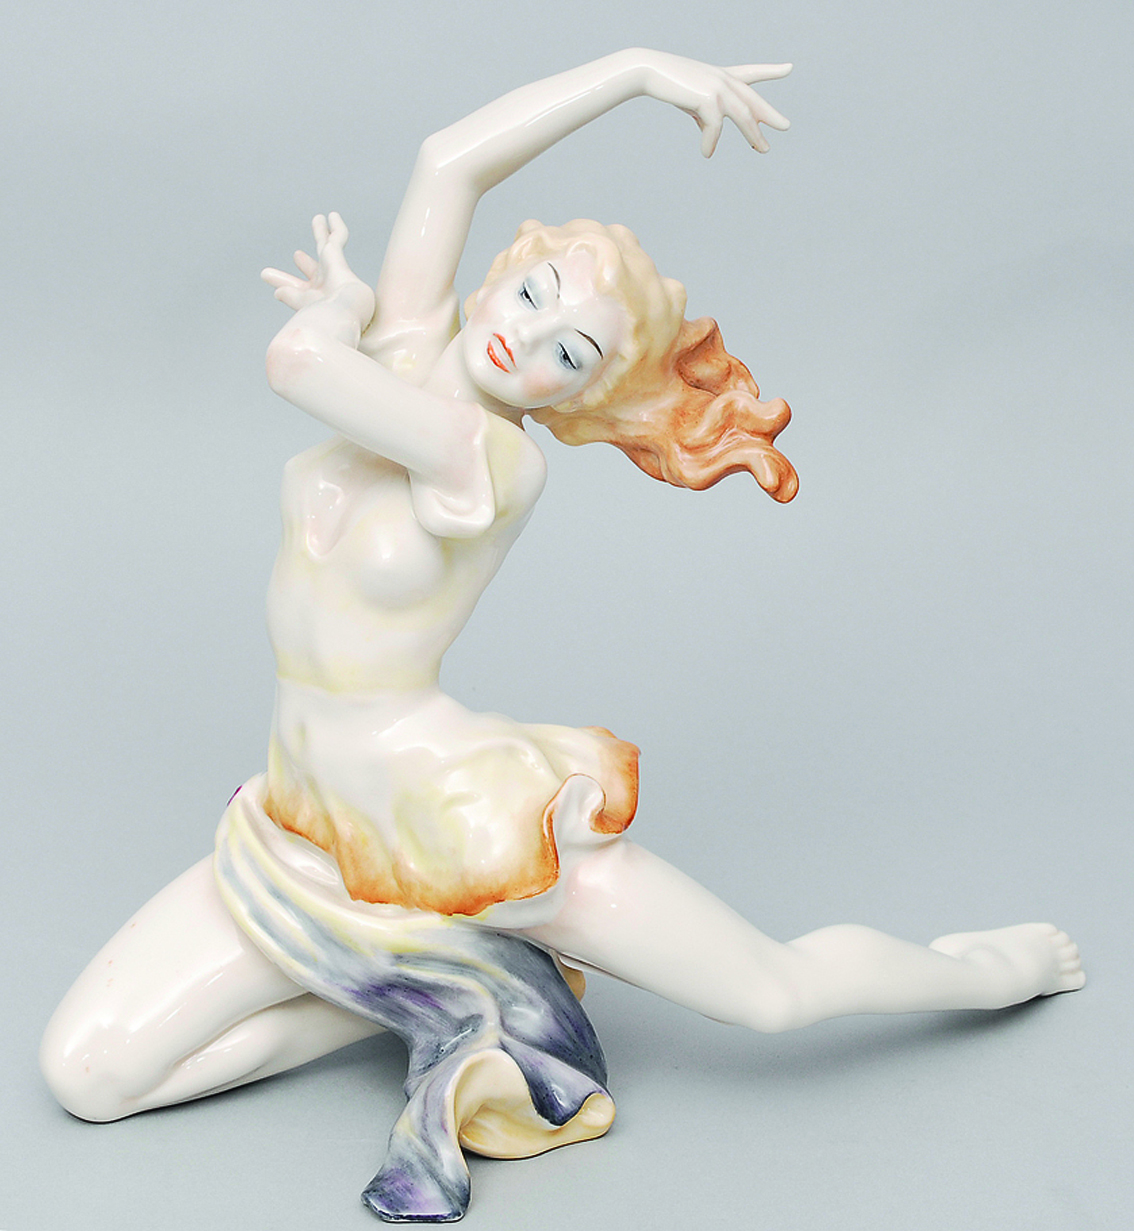 A figure of a dancer